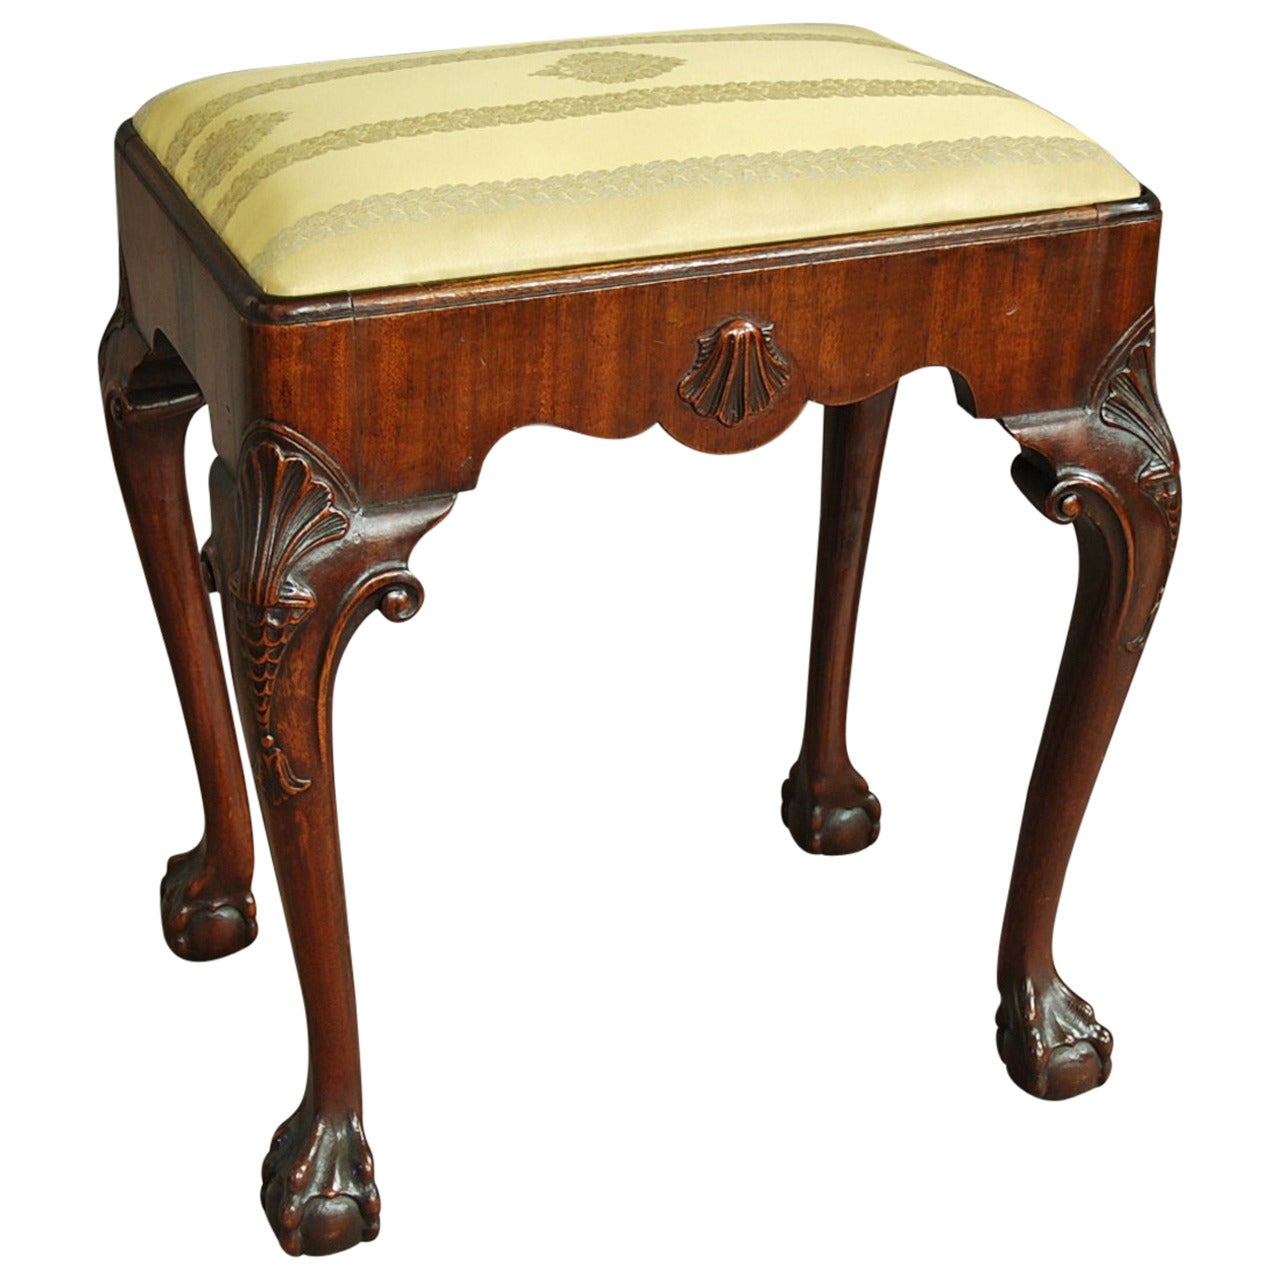 Early 20th century walnut cabriole leg stool